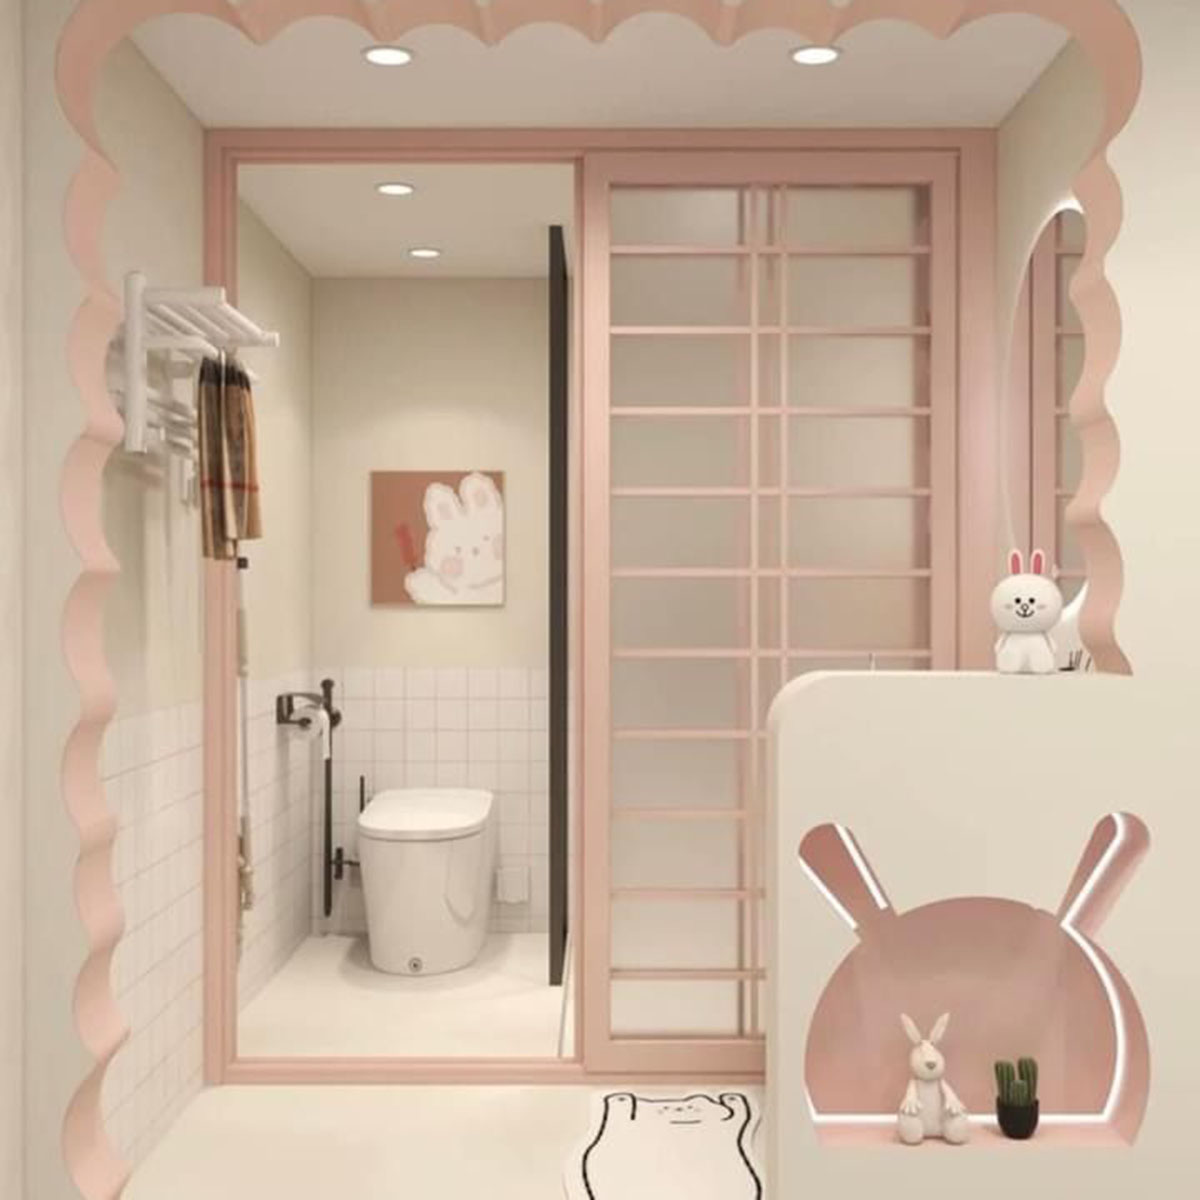 Thảm chùi chân “tone sur tone” với chủ đề phòng tắm. Nguồn: Pinterest